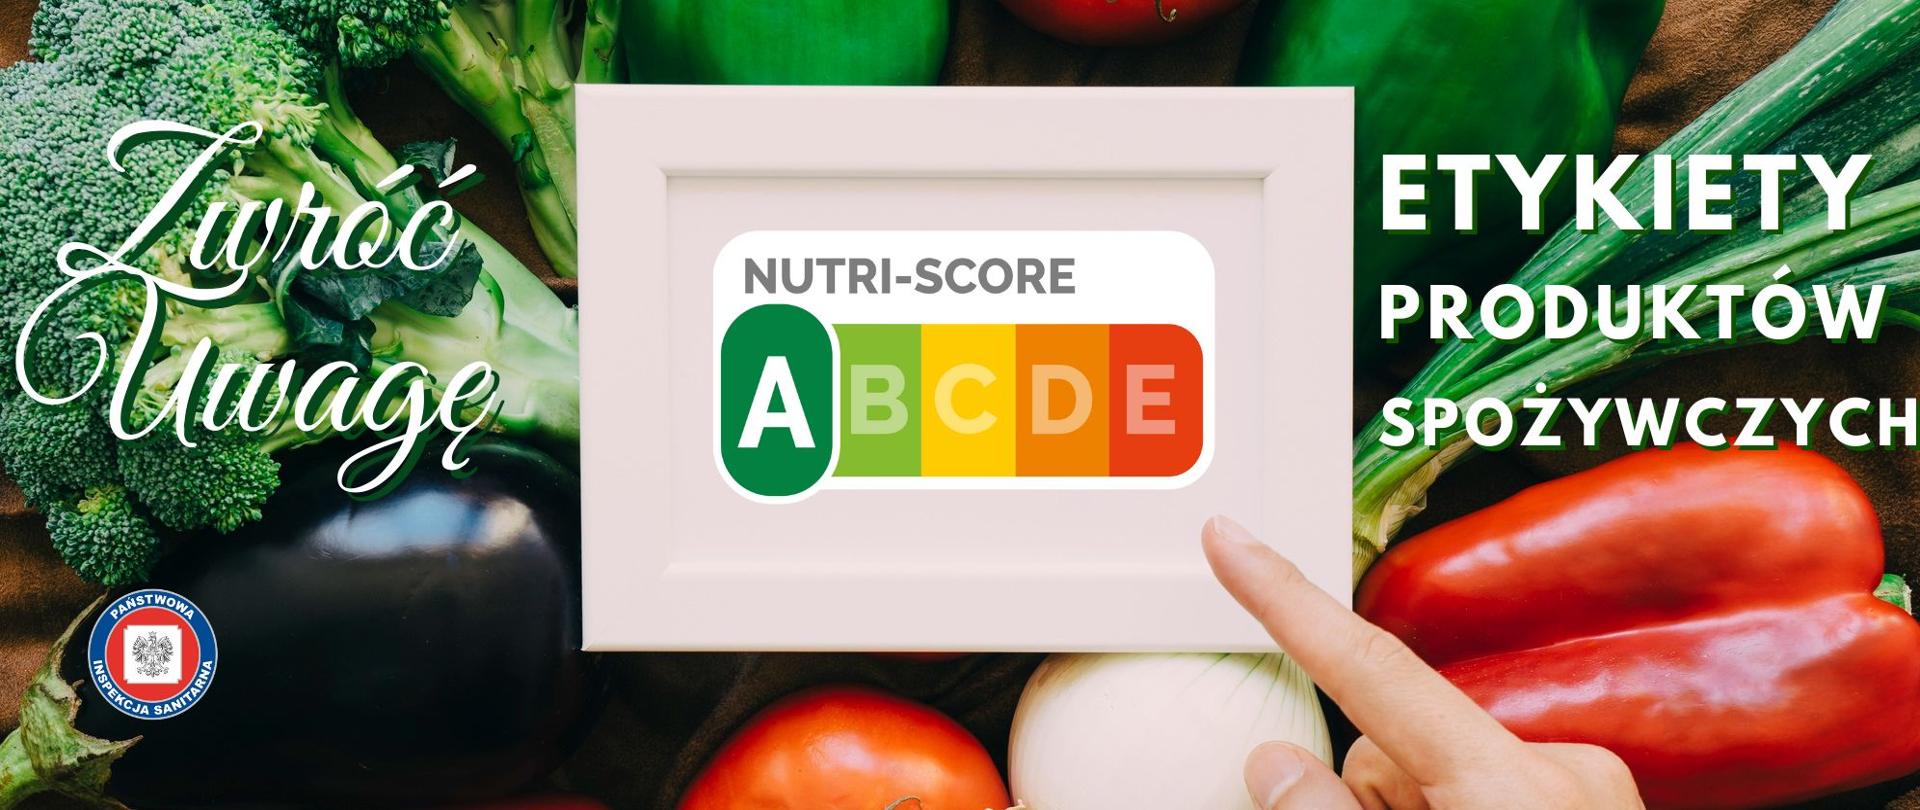 Palec wskazujący tabliczkę z oznaczeniem Nutri-score nad poukładanymi na stole różnokolorowymi warzywami